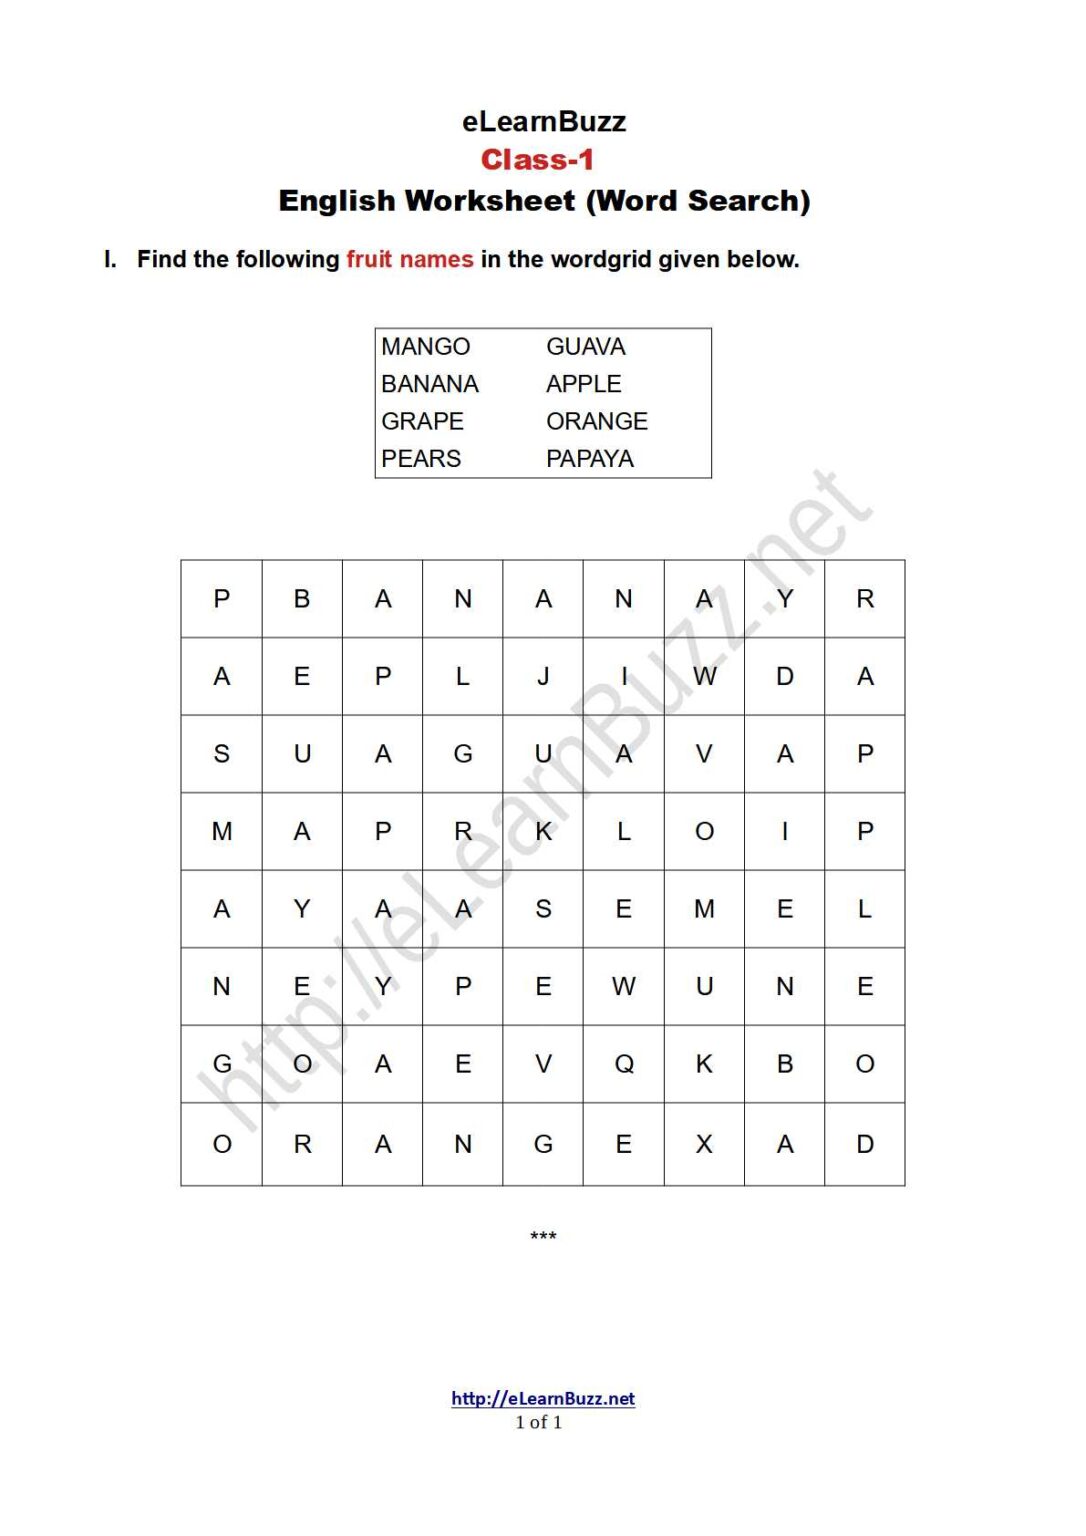 jumbled-words-worksheets-for-grade-5-k5-learning-5th-grade-jumbled-words-worksheet-englishbix